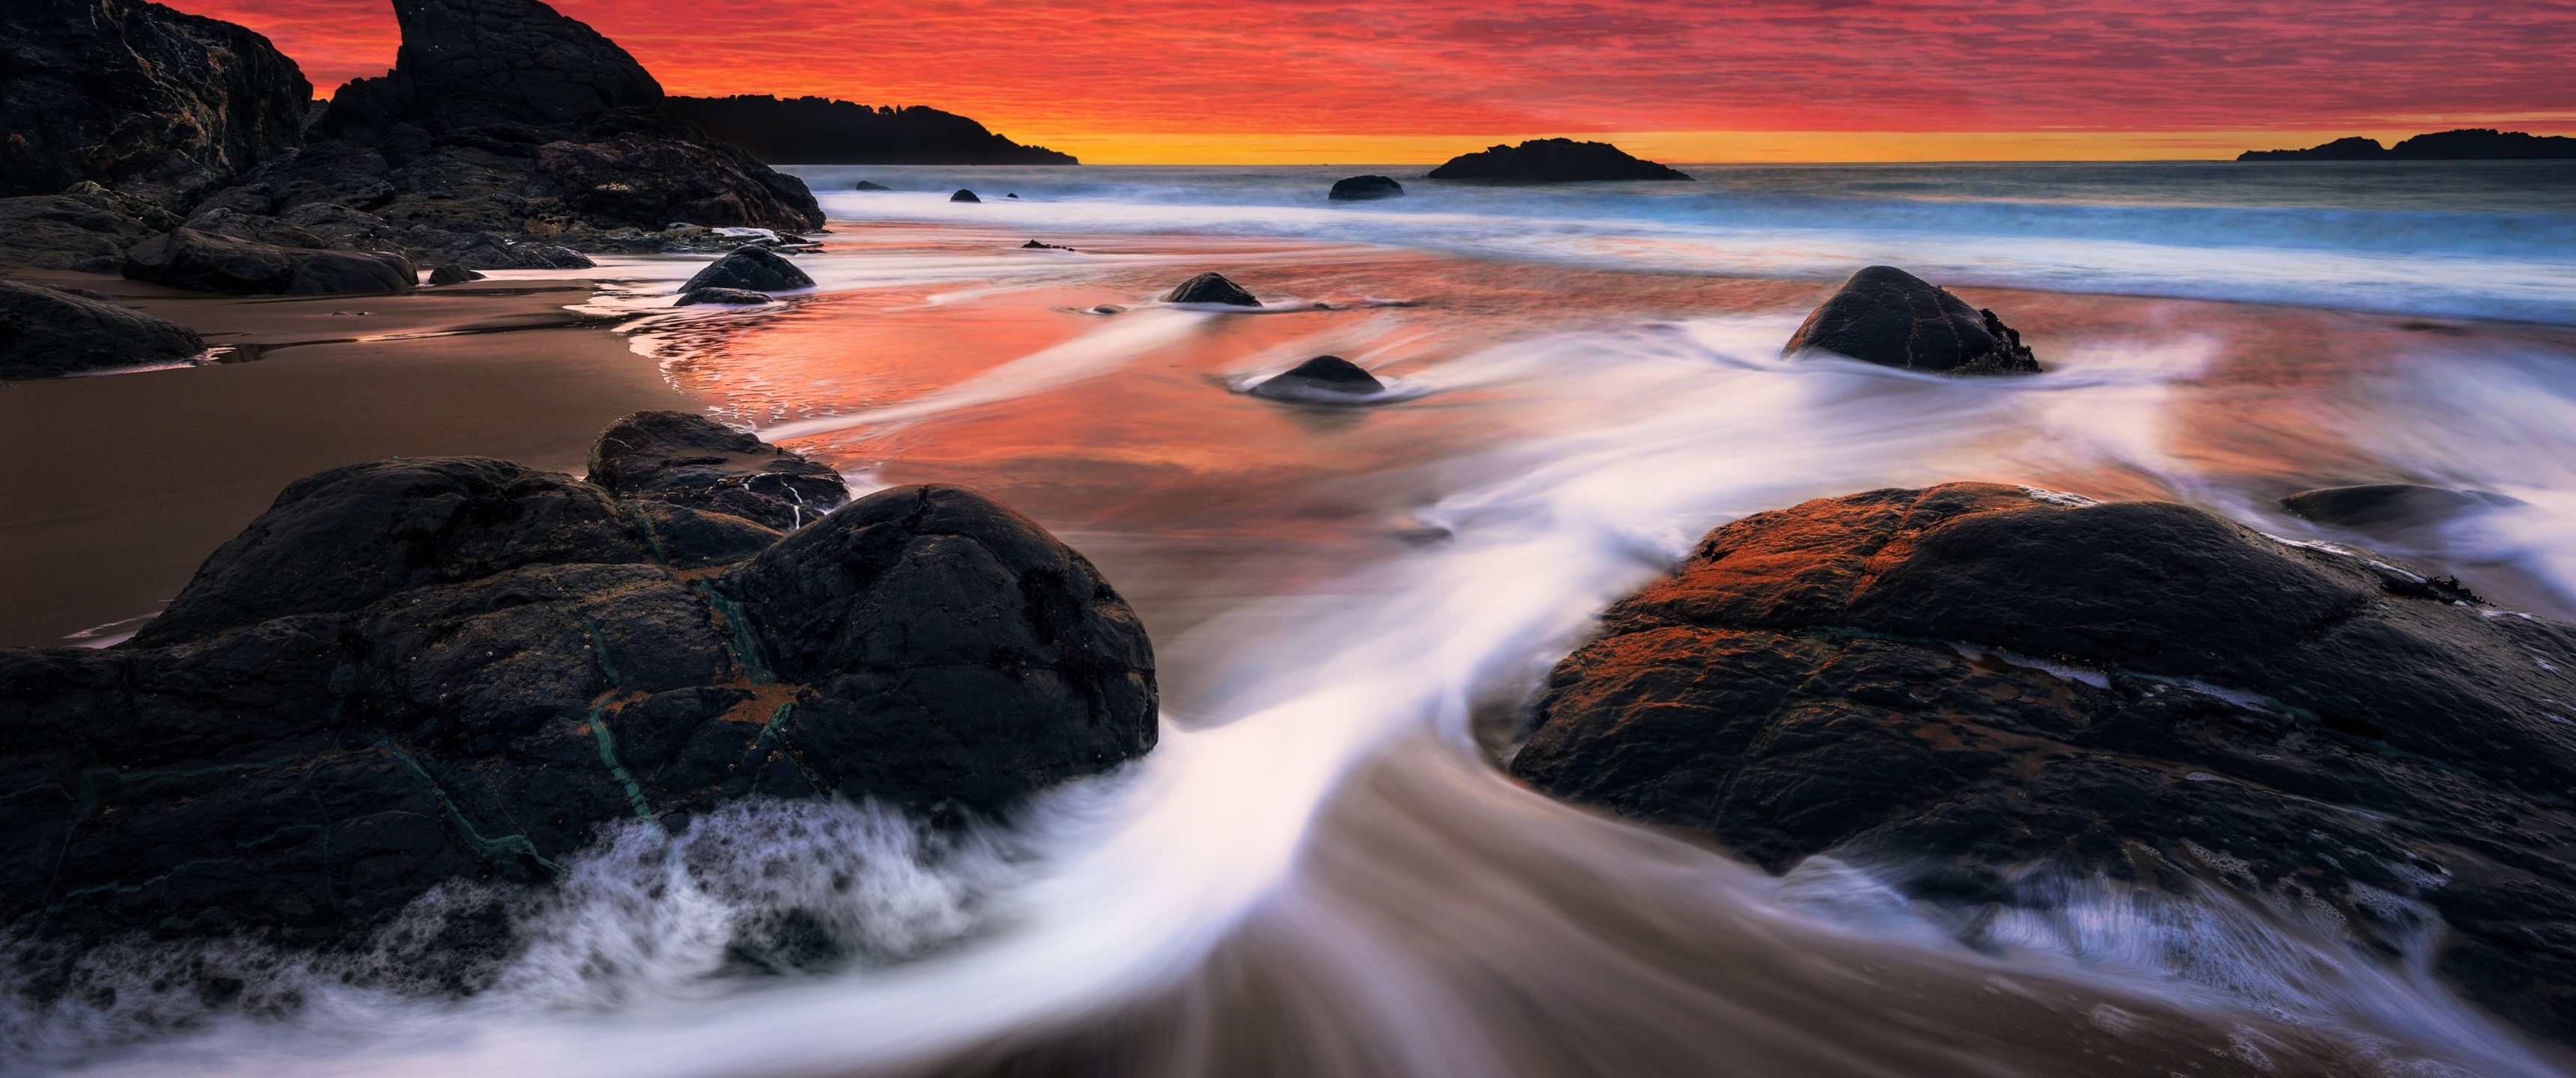 Ocean Landscape, Marshall Beach wallpaper, San Francisco sunset, 3440x1440 Dual Screen Desktop